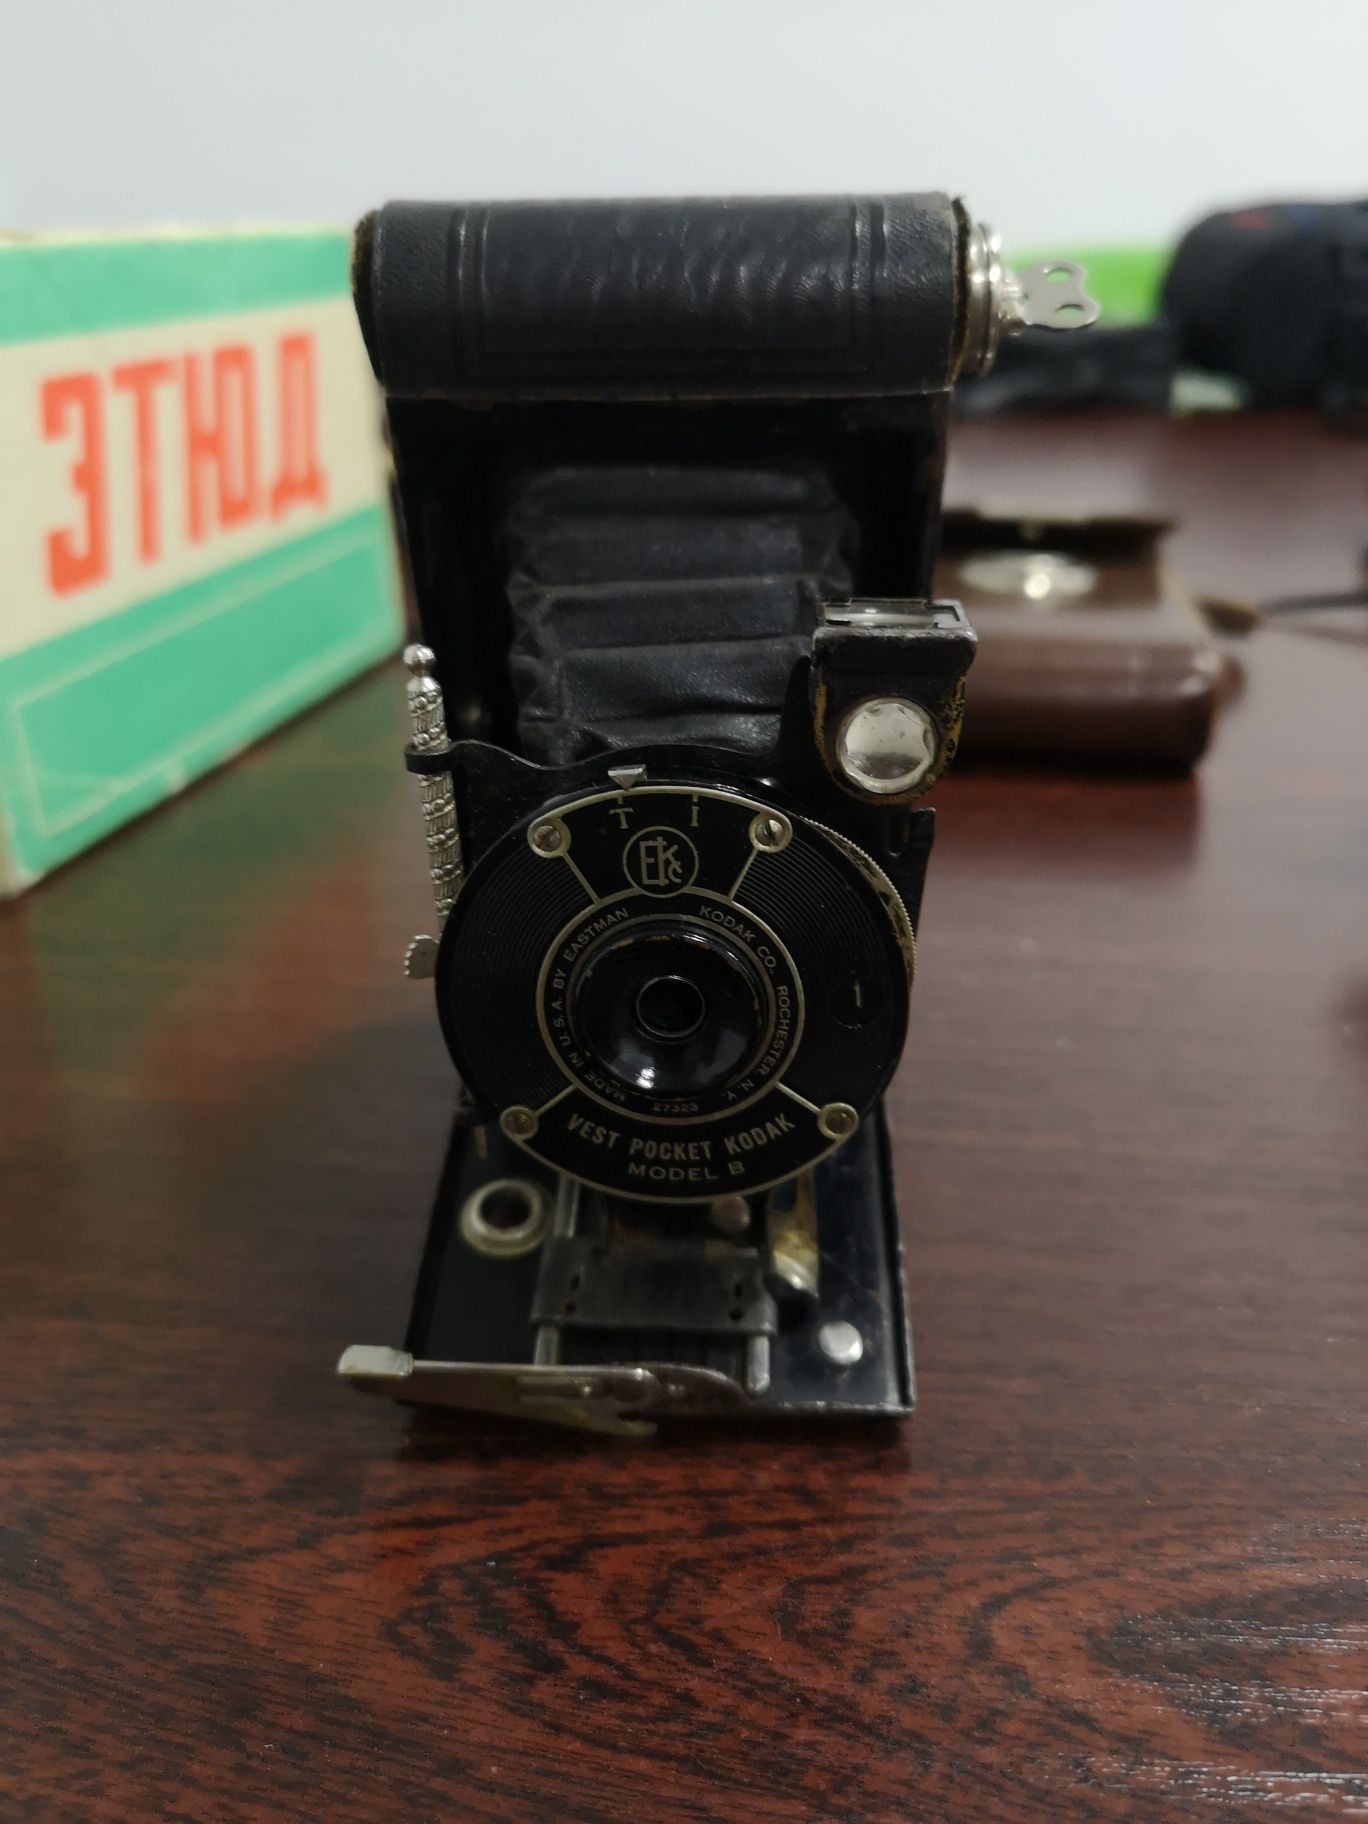 Aparat Kodak pocket przedwojenny